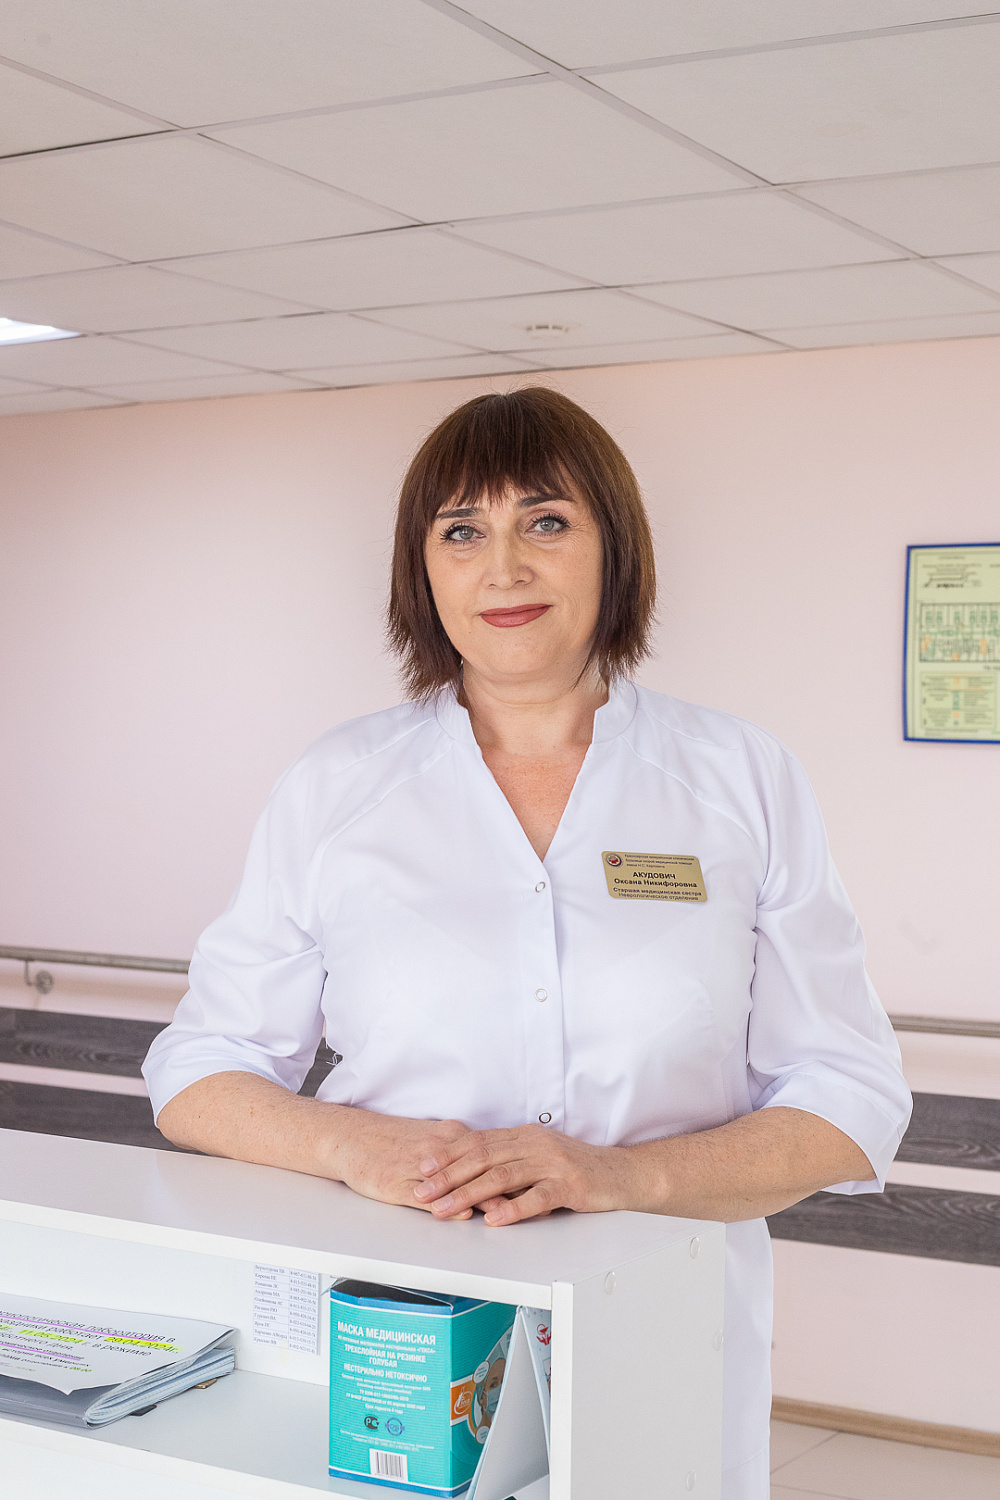 Лучшая старшая медицинская сестра работает в Красноярской межрайонной клинической больнице скорой медицинской помощи имени Н.С. Карповича